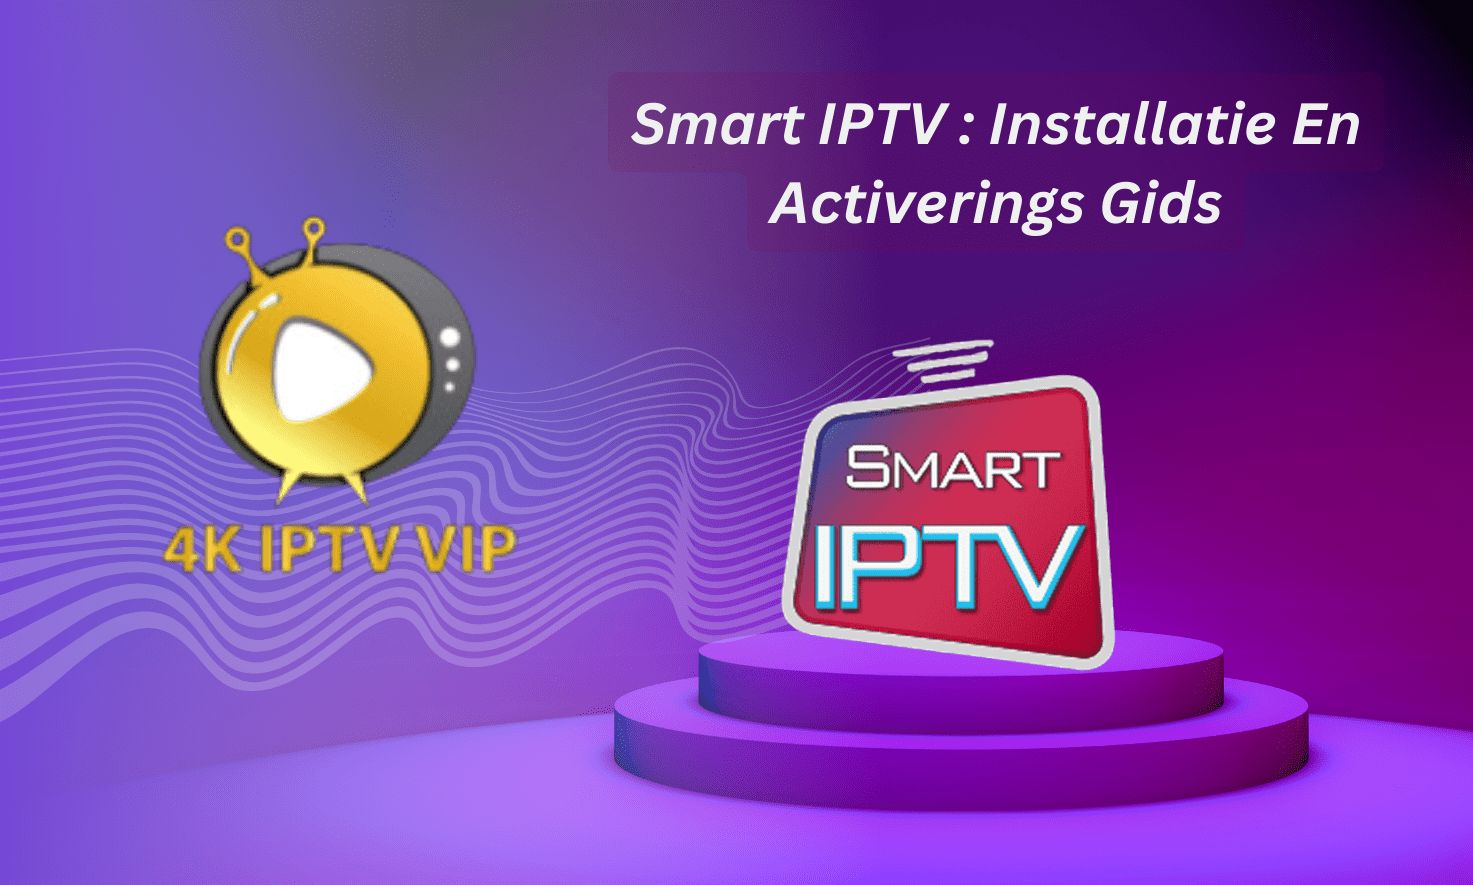 Smart IPTV: installatie en activerings gids